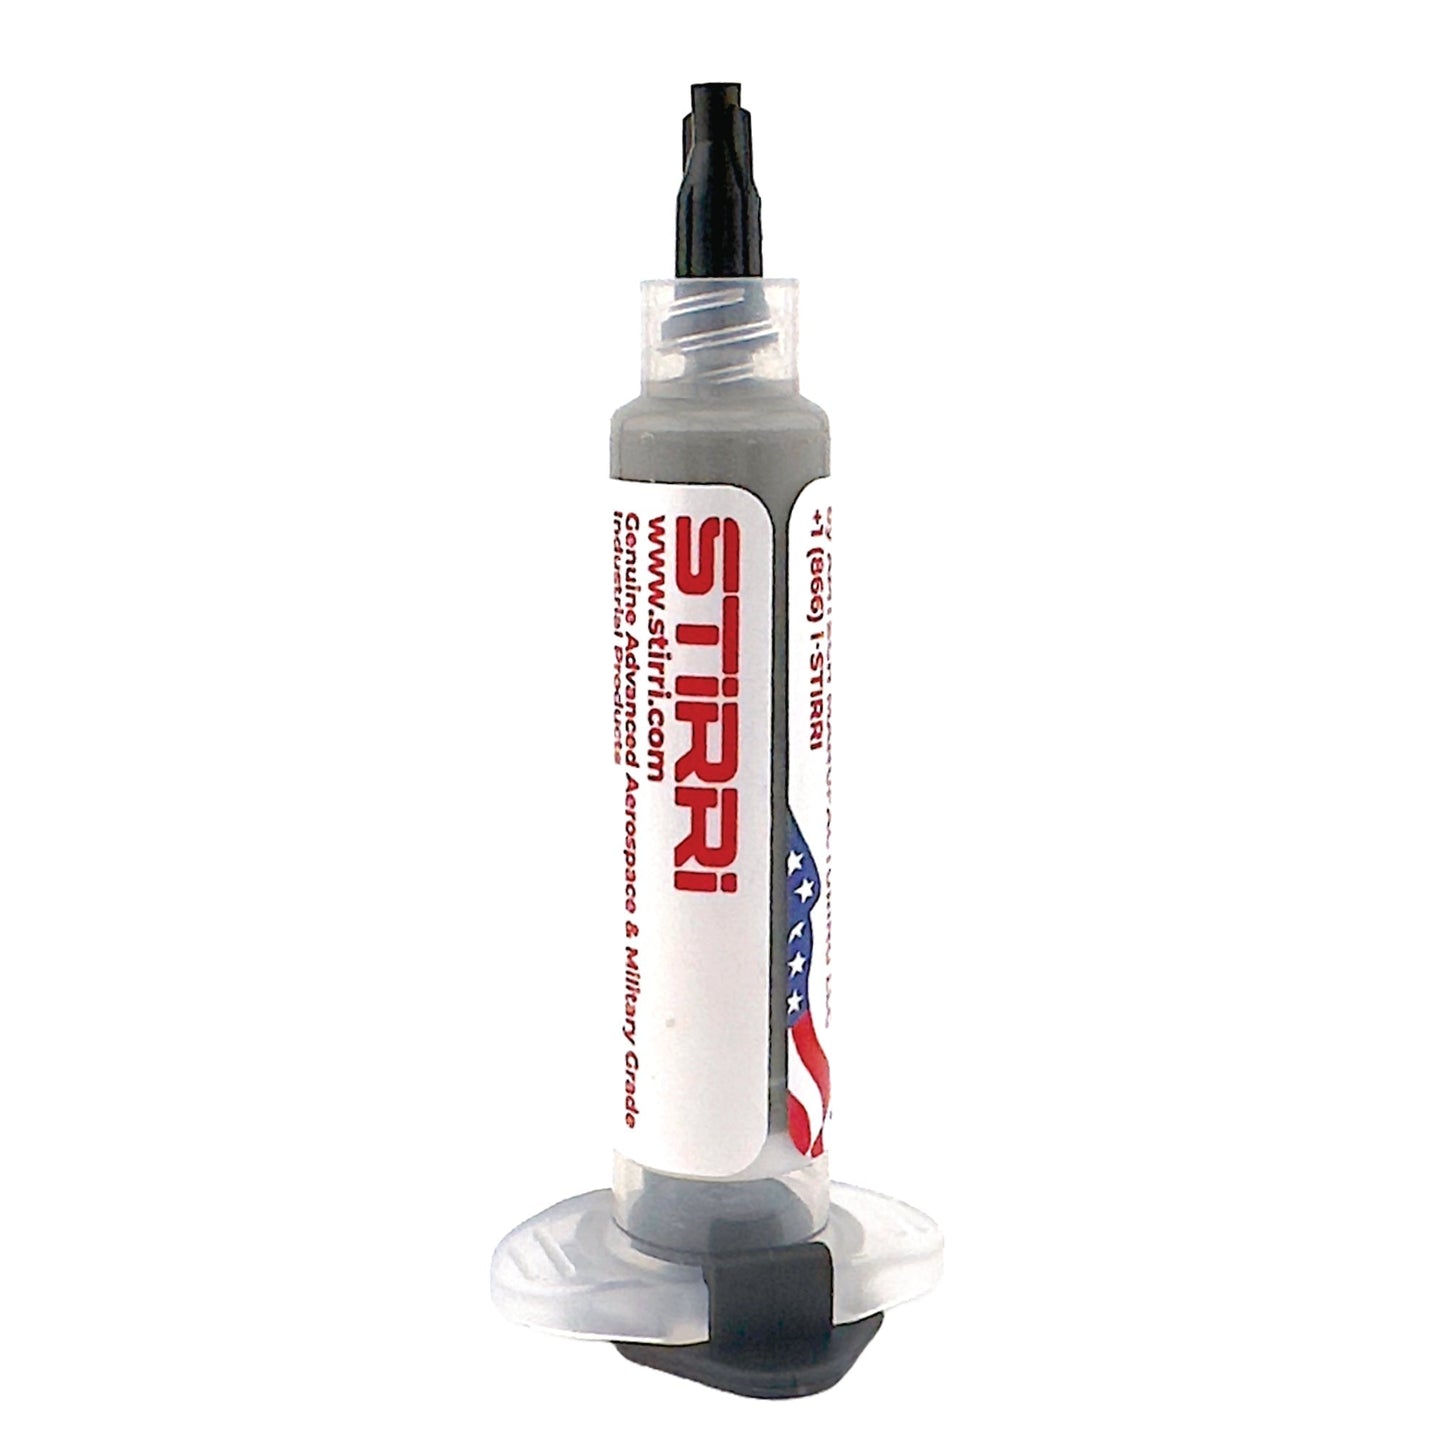 STIRRI-ASM-305 - Sn96.5Ag3.0Cu0.5 pasta de soldadura de colofonia sin necesidad de limpieza, sin plomo, sin halógenos y con huecos ultrabajos, 3% de plata (ROL0)